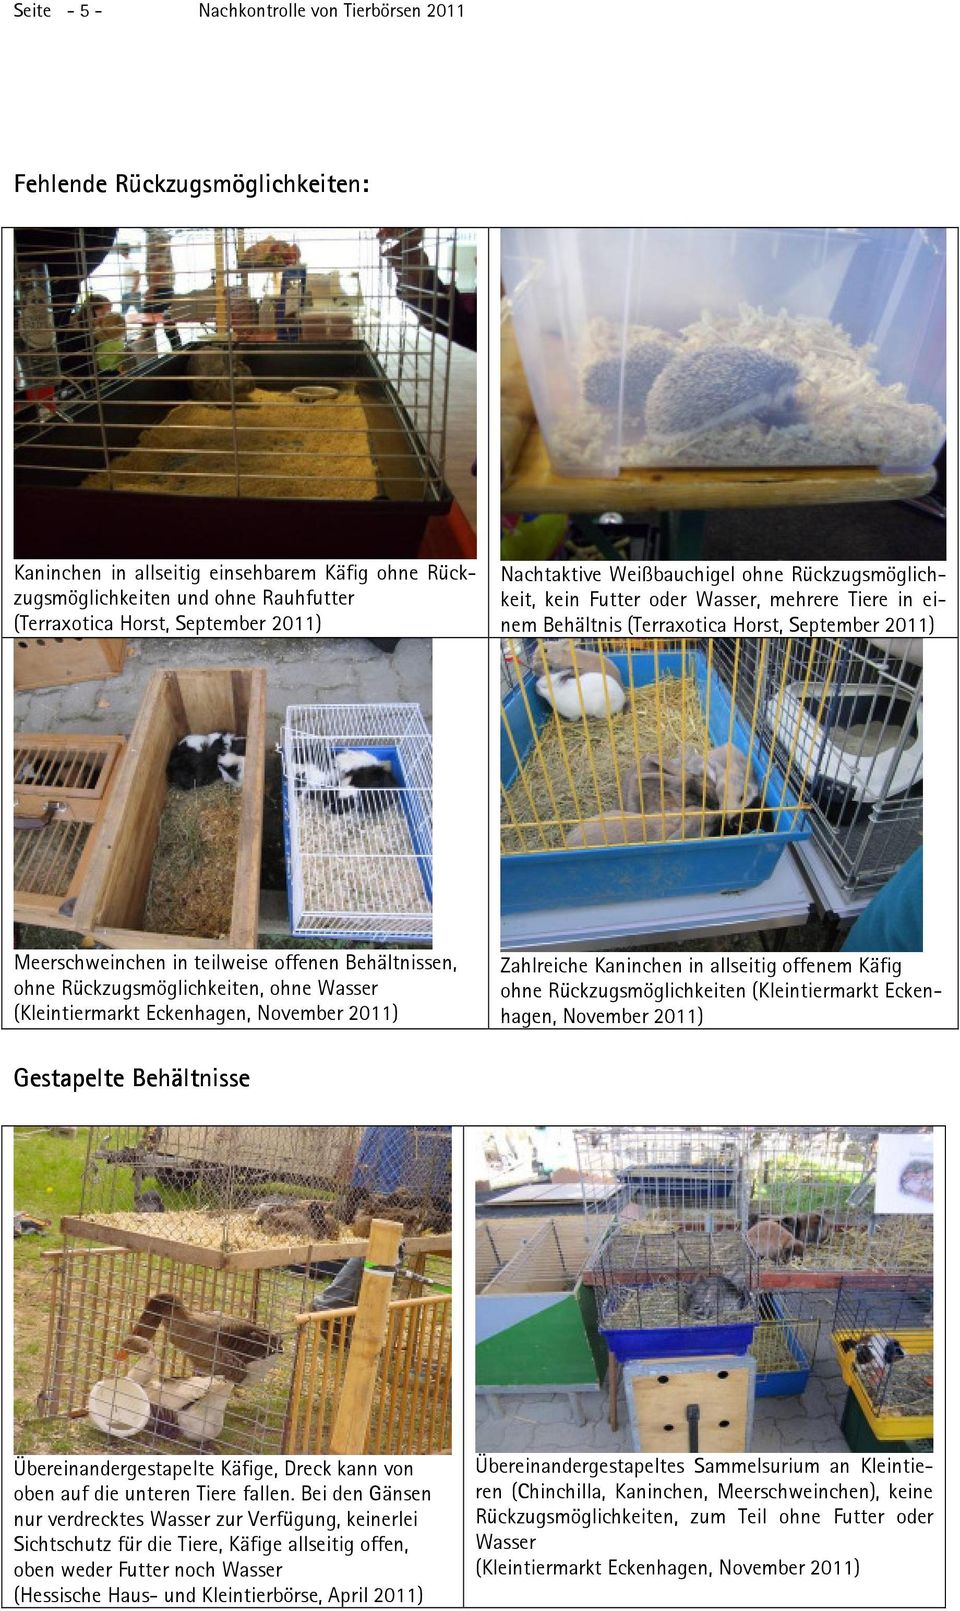 Behältnissen, ohne Rückzugsmöglichkeiten, ohne Wasser Zahlreiche Kaninchen in allseitig offenem Käfig ohne Rückzugsmöglichkeiten (Kleintiermarkt Eckenhagen, November 2011) Gestapelte Behältnisse